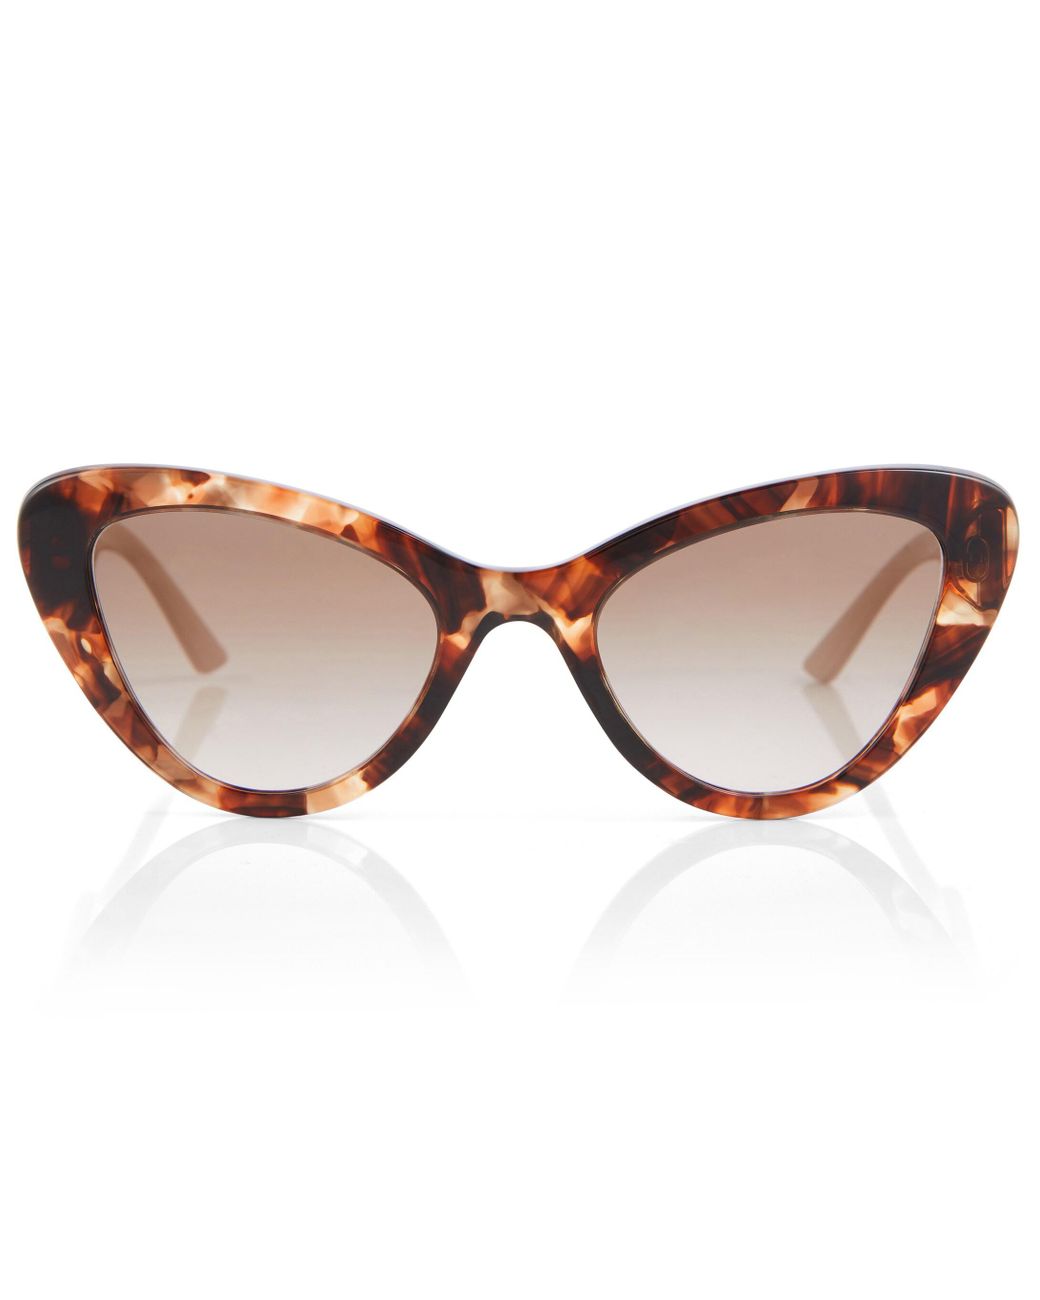 Prada Cat-eye Sunglasses in Brown | Lyst UK